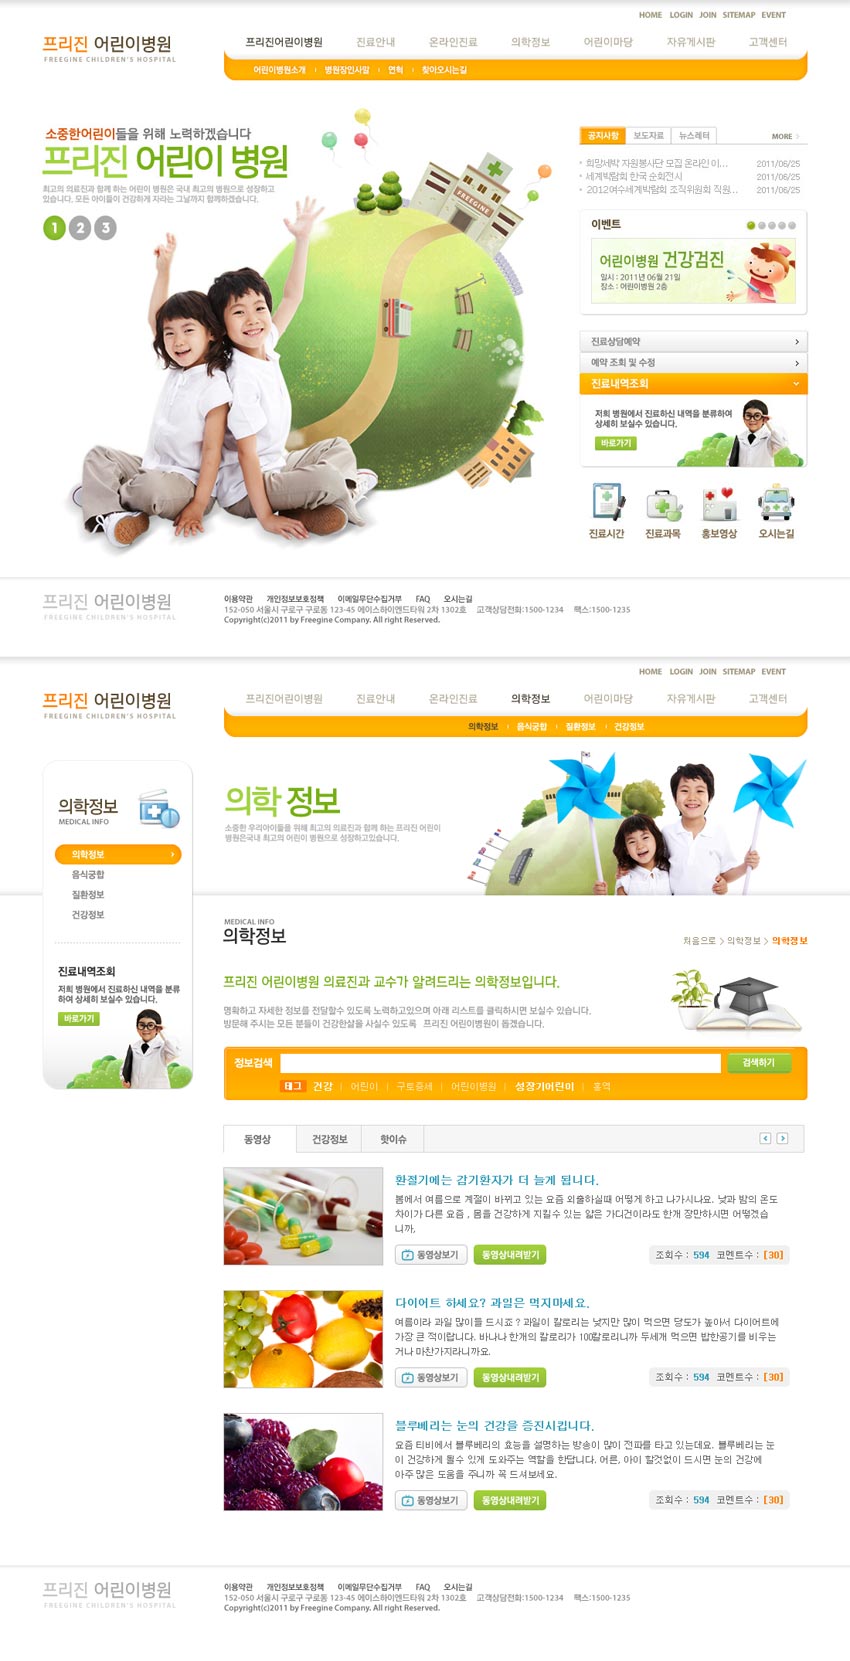 橙色的韩国小学生成长教育网站模板全站psd下载